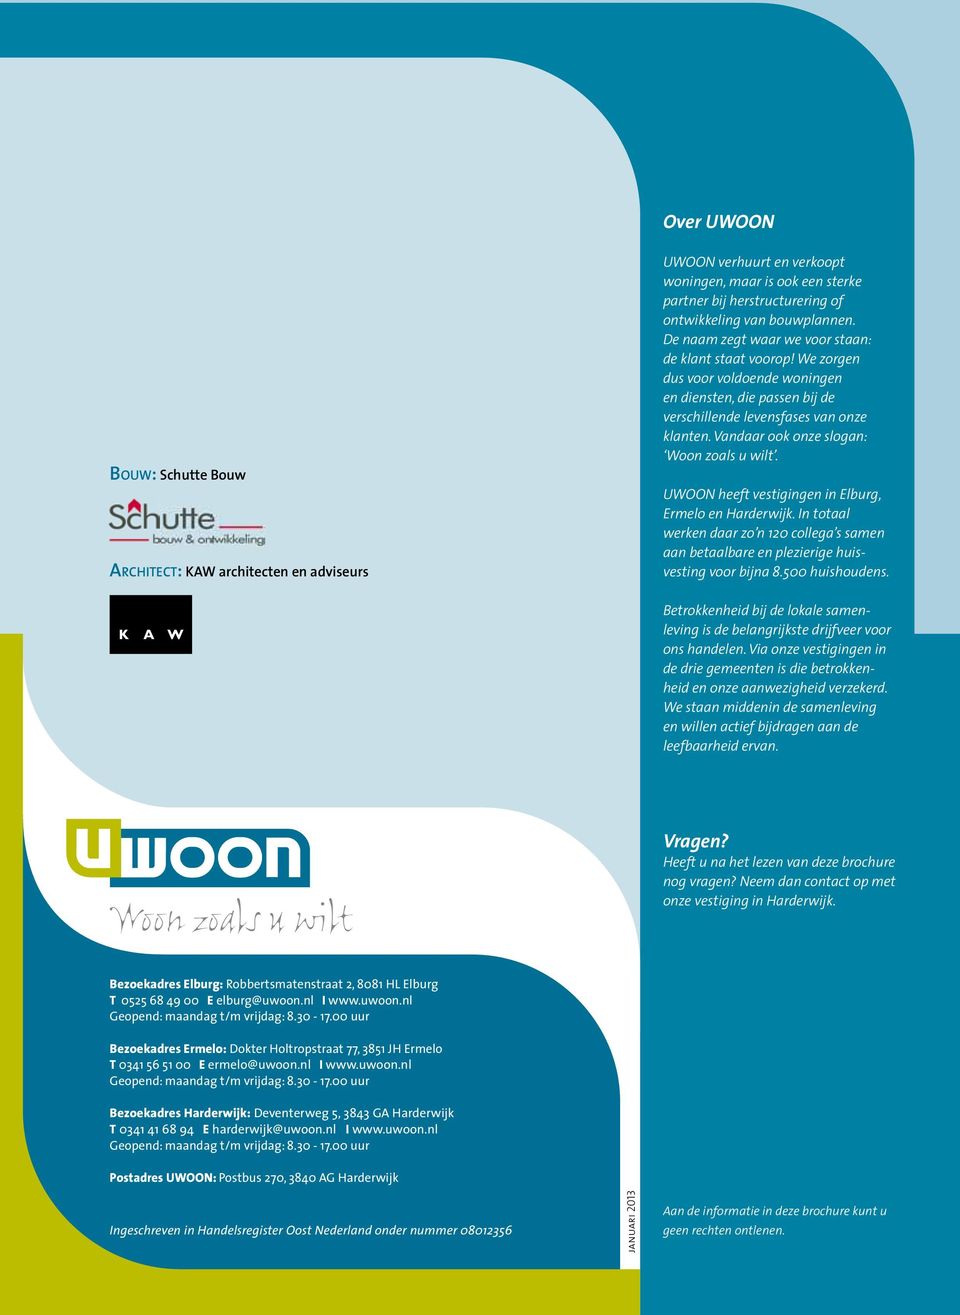 UWOON heeft vestigingen in Elburg, Ermelo en Harderwijk. In totaal werken daar zo n 120 collega s samen aan betaalbare en plezierige huisvesting voor bijna 8.500 huishoudens.